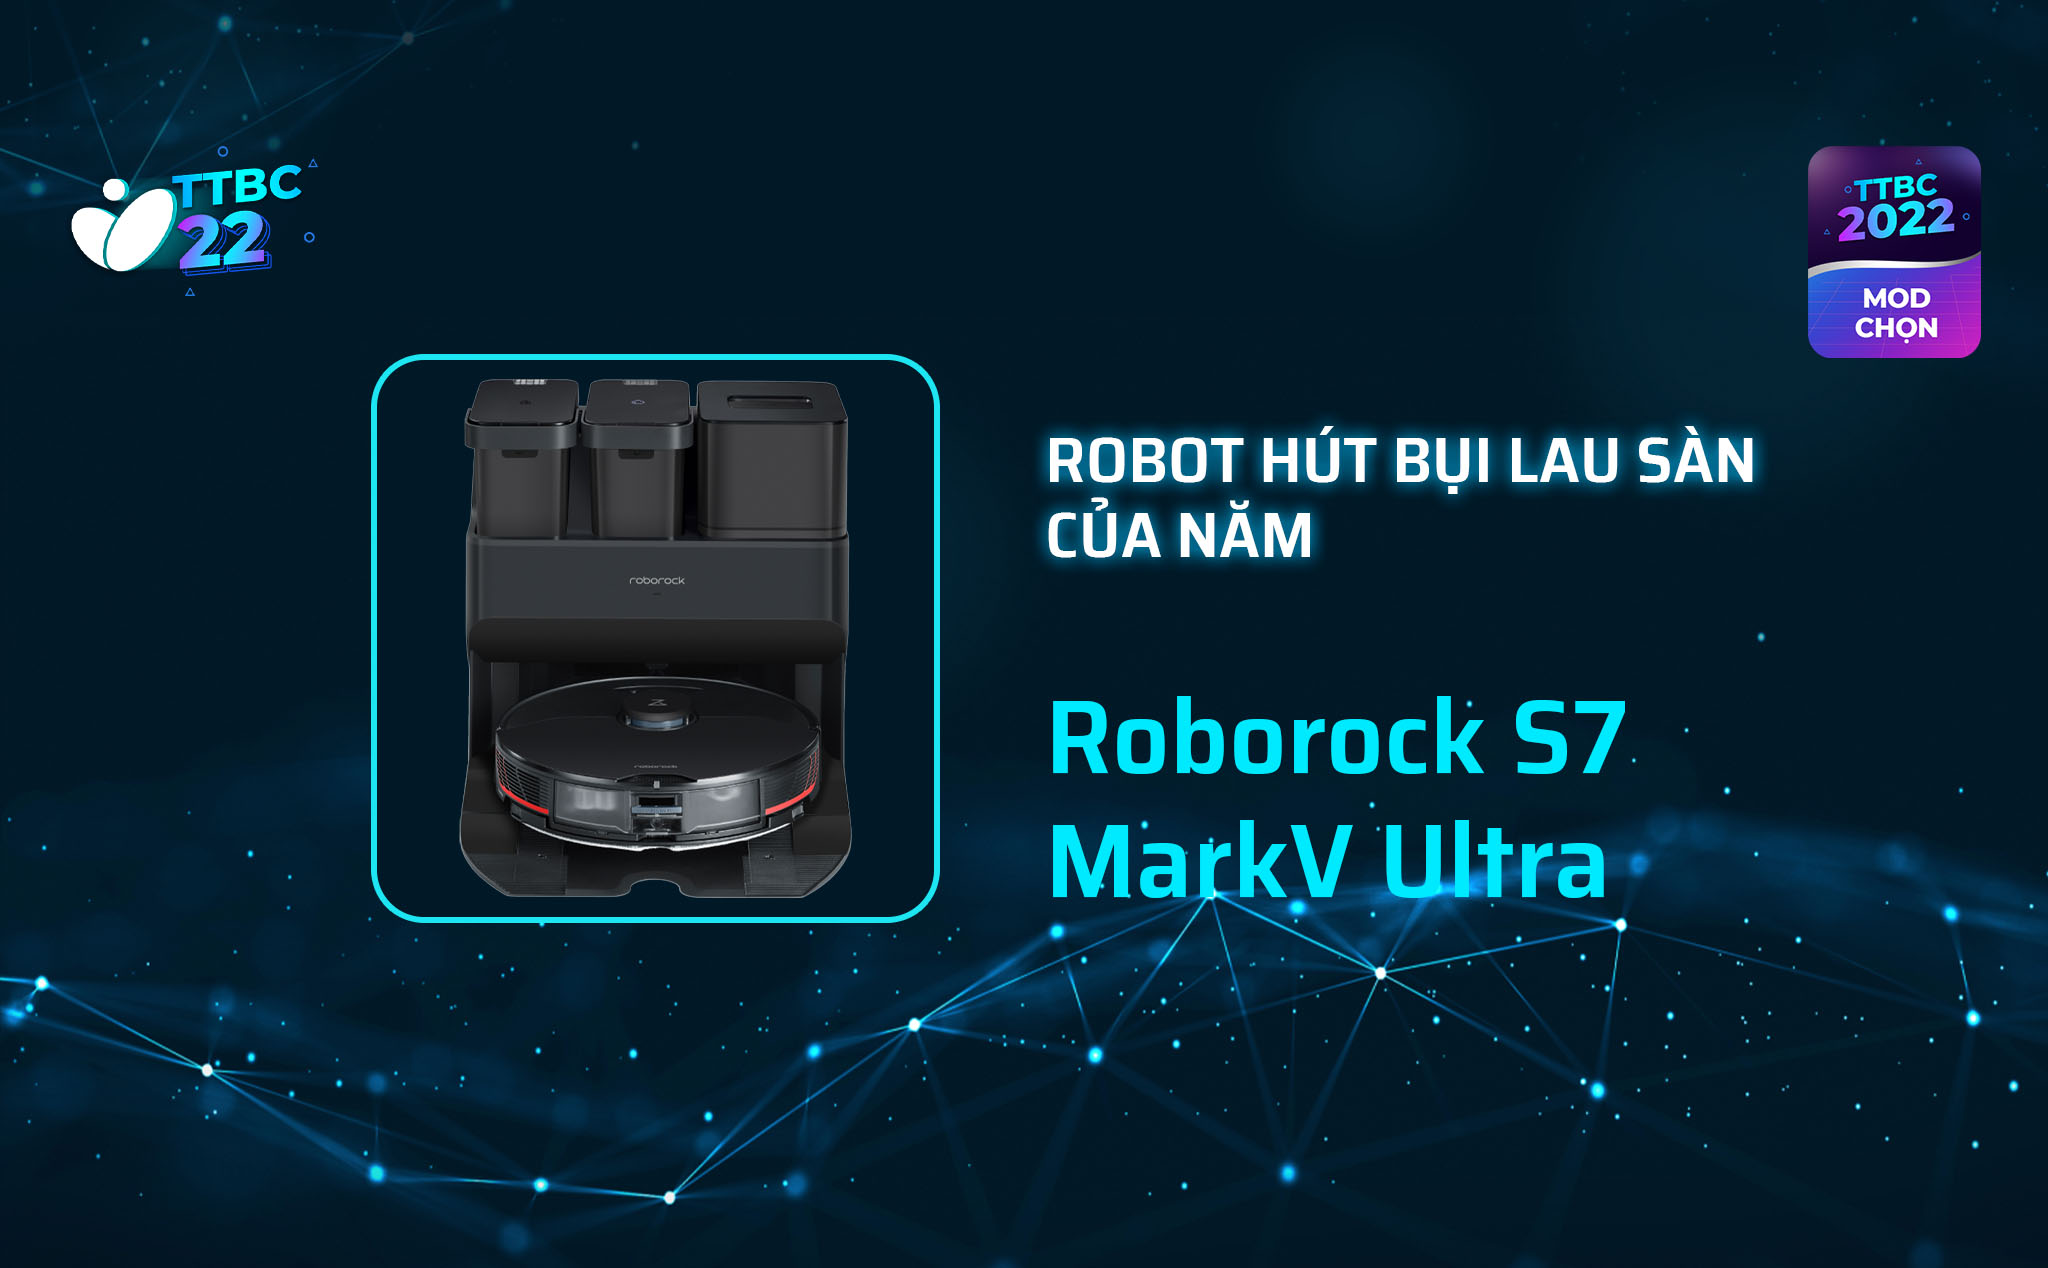 TTBC22 - Mod Choice - Roborock S7 Mark V Ultra: Robot hút bụi lau sàn của năm